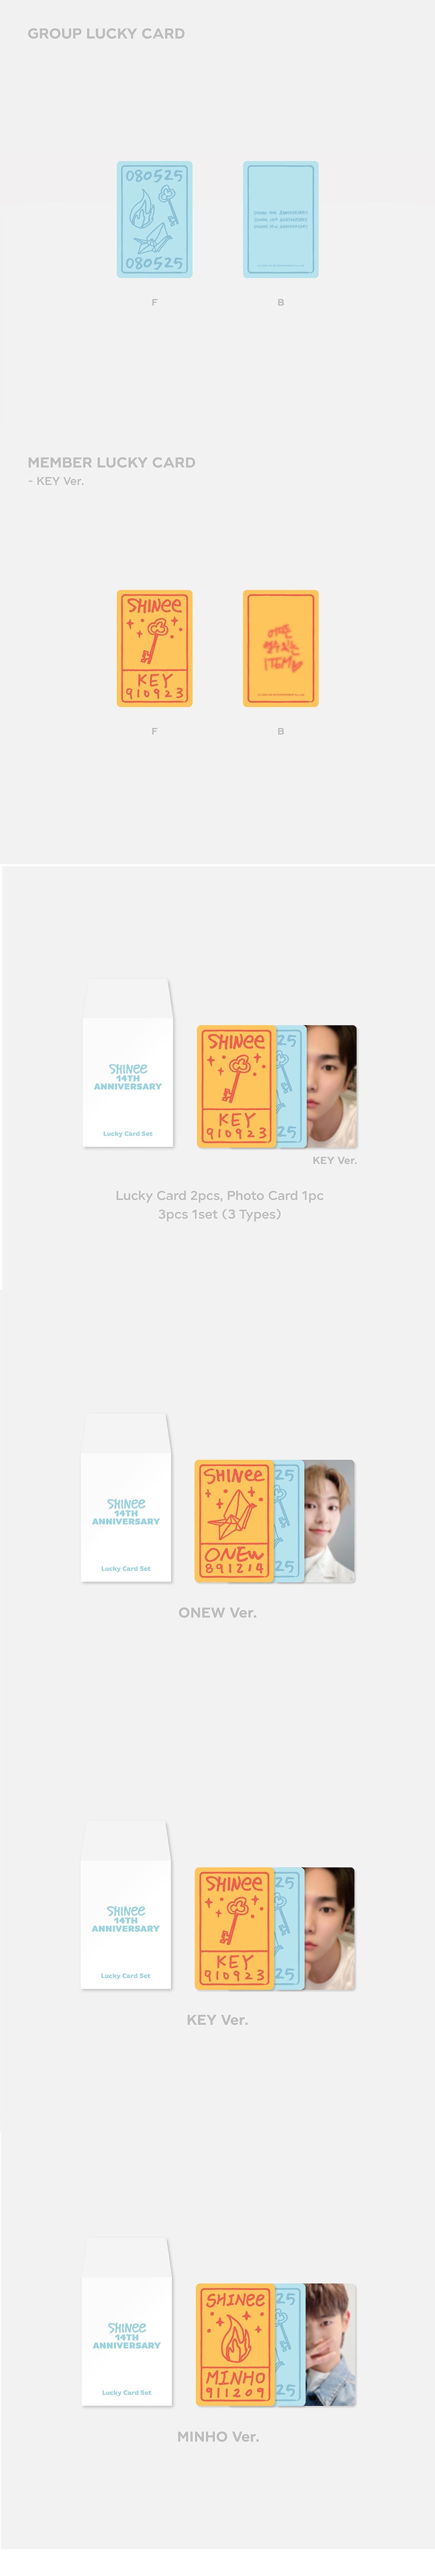 Shinee [14 aniversario] Set de tarjetas de suerte